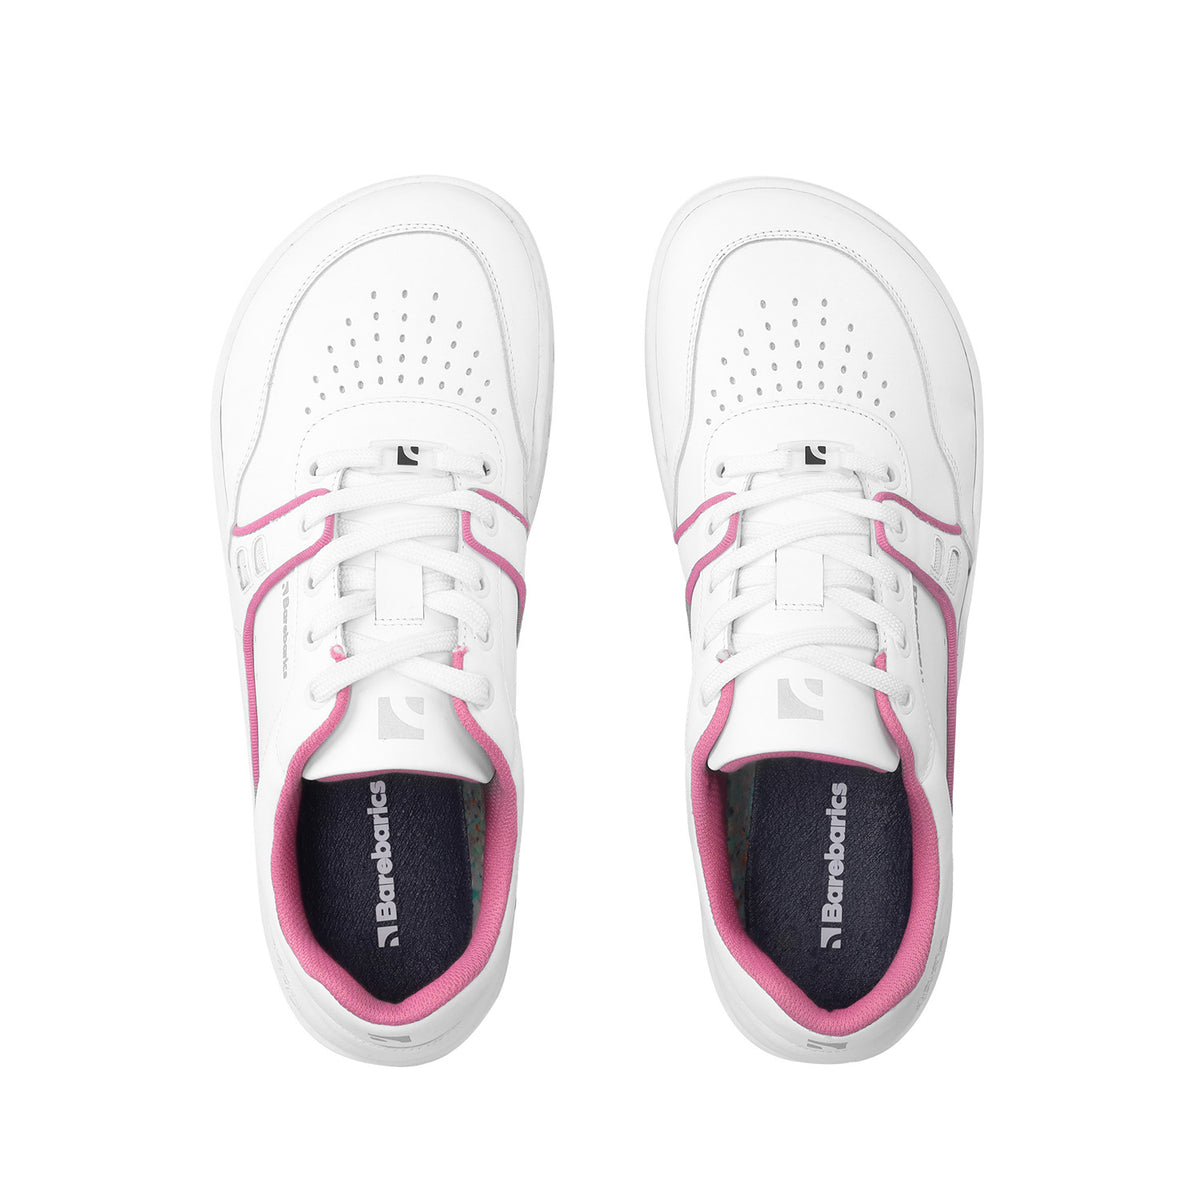 Barefoot Sneakers Barebarics Arise - White & Raspberry Pink 5  - OzBarefoot